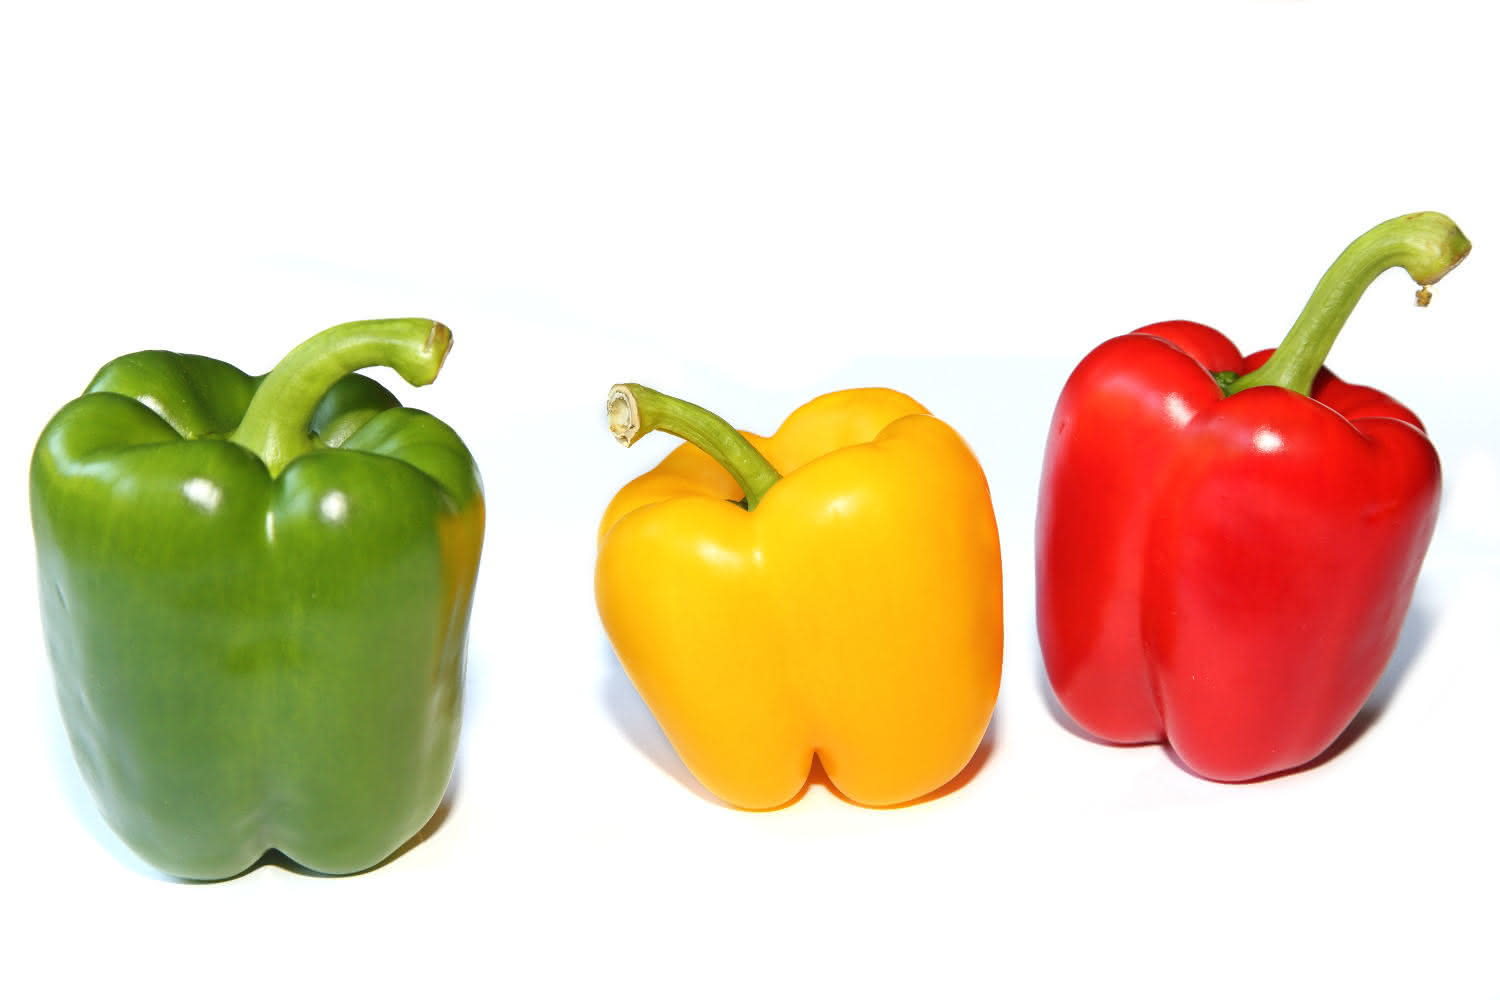 farbige Paprika (grün, gelb, rot)